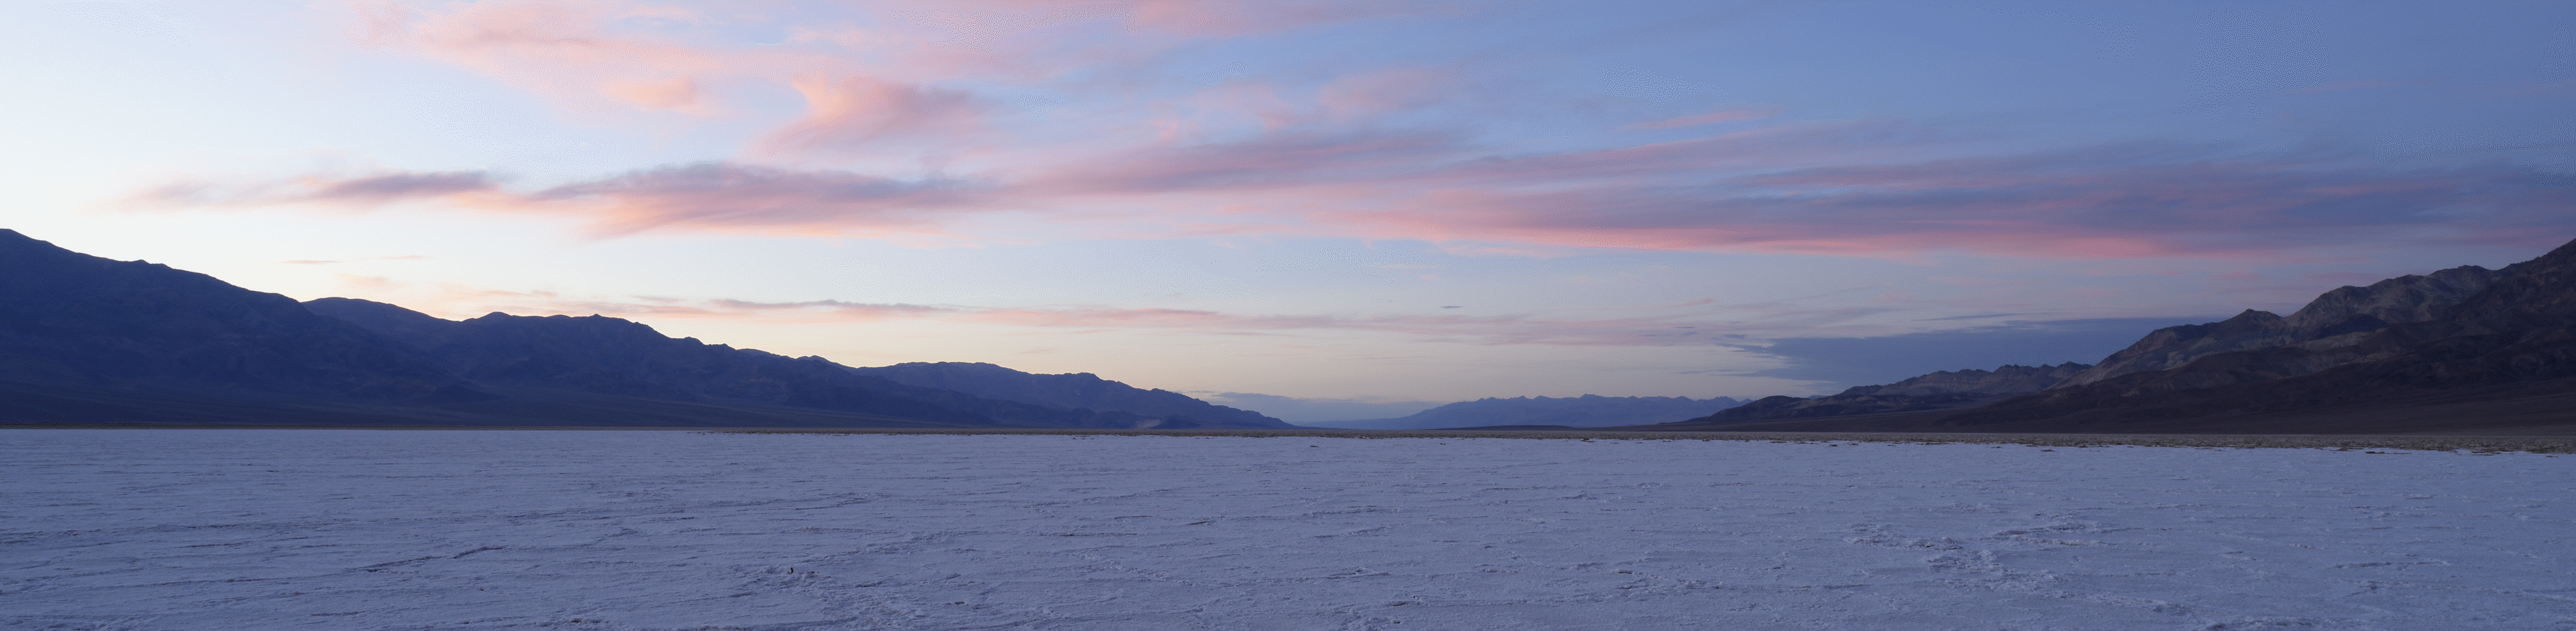 Широкоъгълна снимка на пустинен пейзаж със залез зад далечни планини